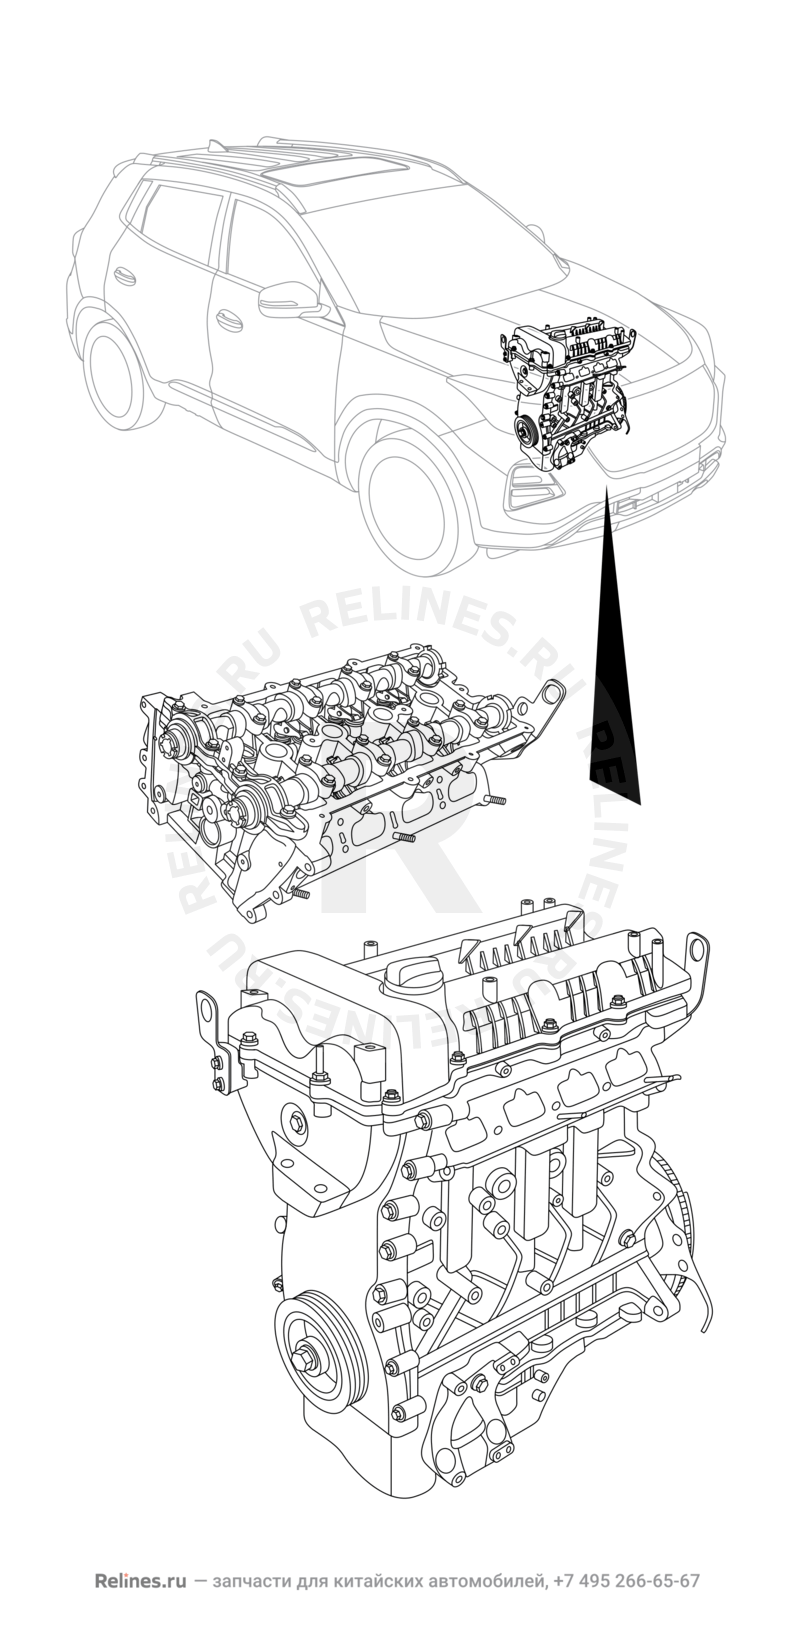 Запчасти Chery Tiggo 4 Поколение I — рестайлинг (2018)  — Двигатель в сборе — схема